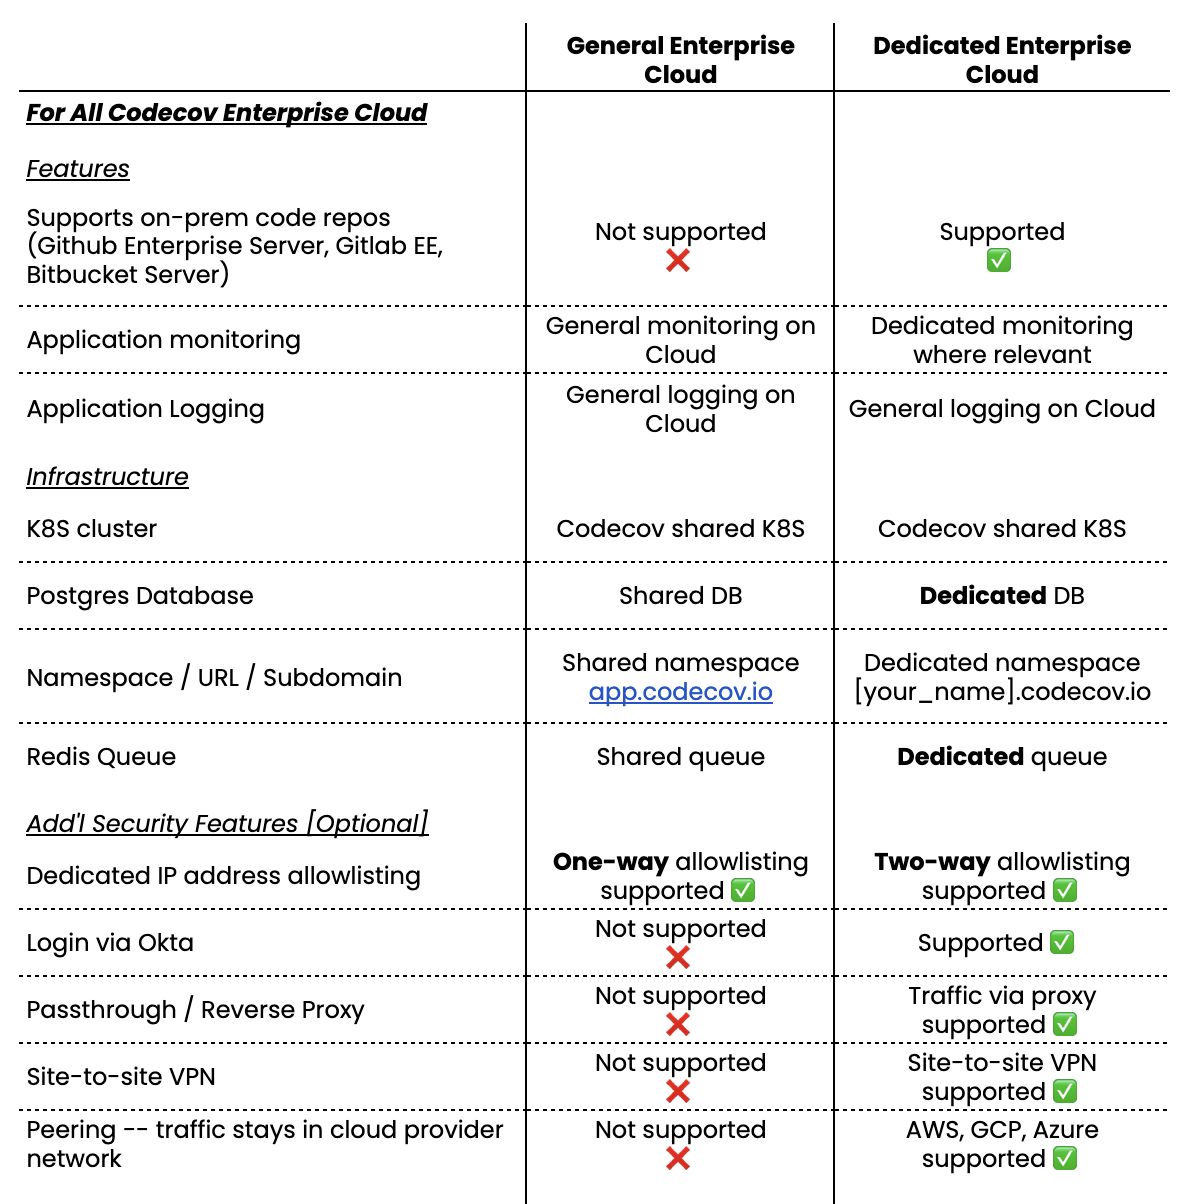 Short comparison of Codecov General Enterprise Cloud and Dedicated Enterprise Cloud 